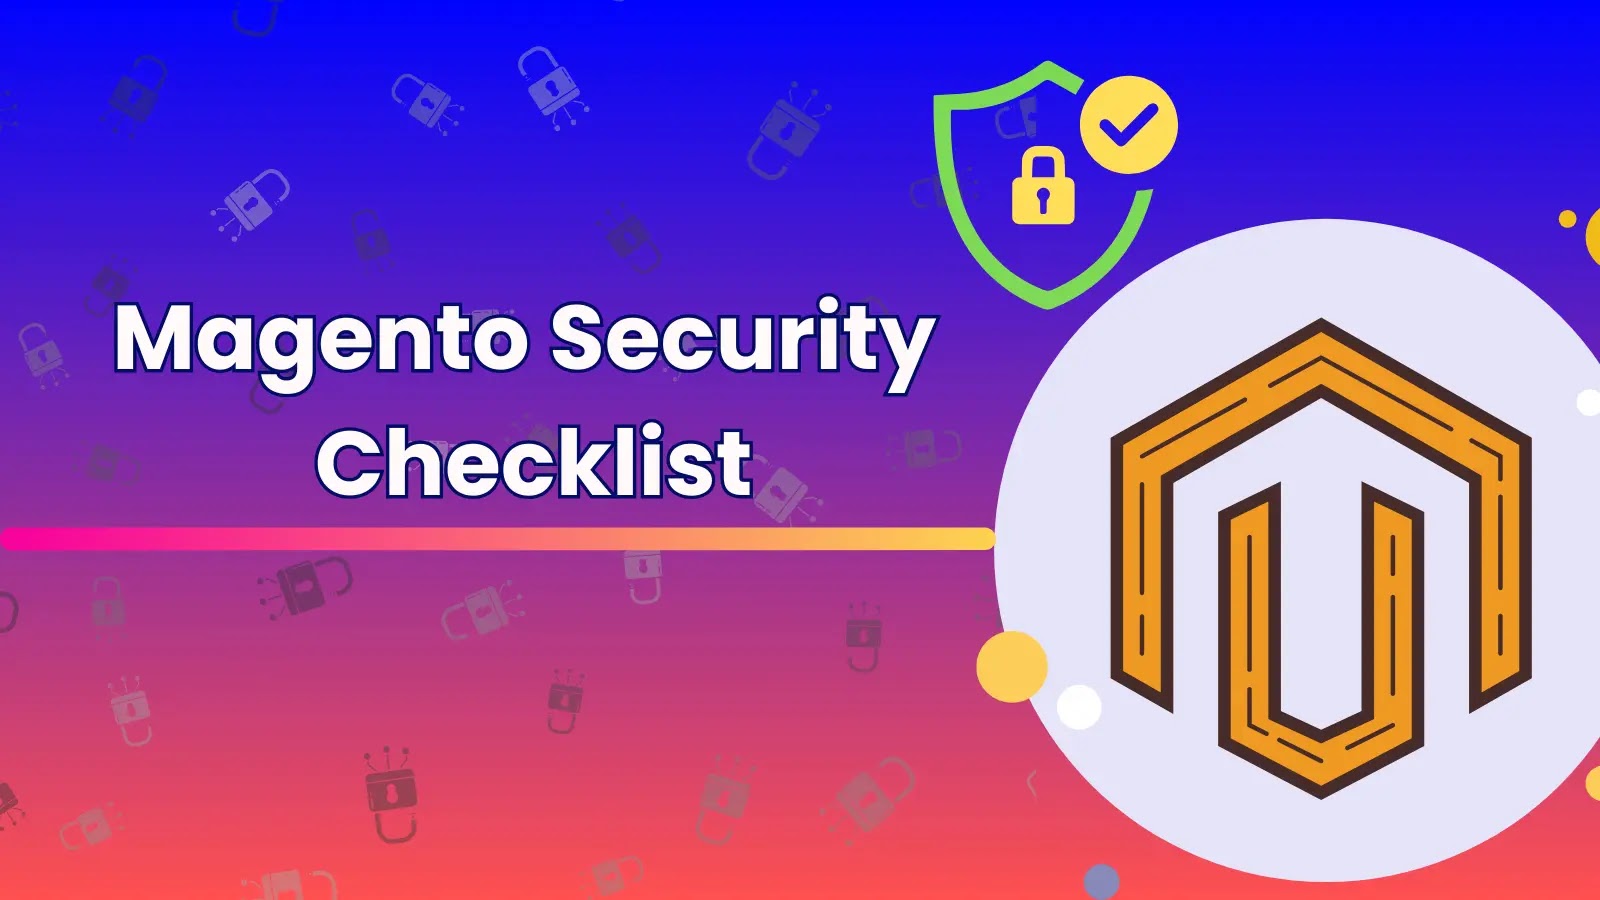 Magento Security Checklist